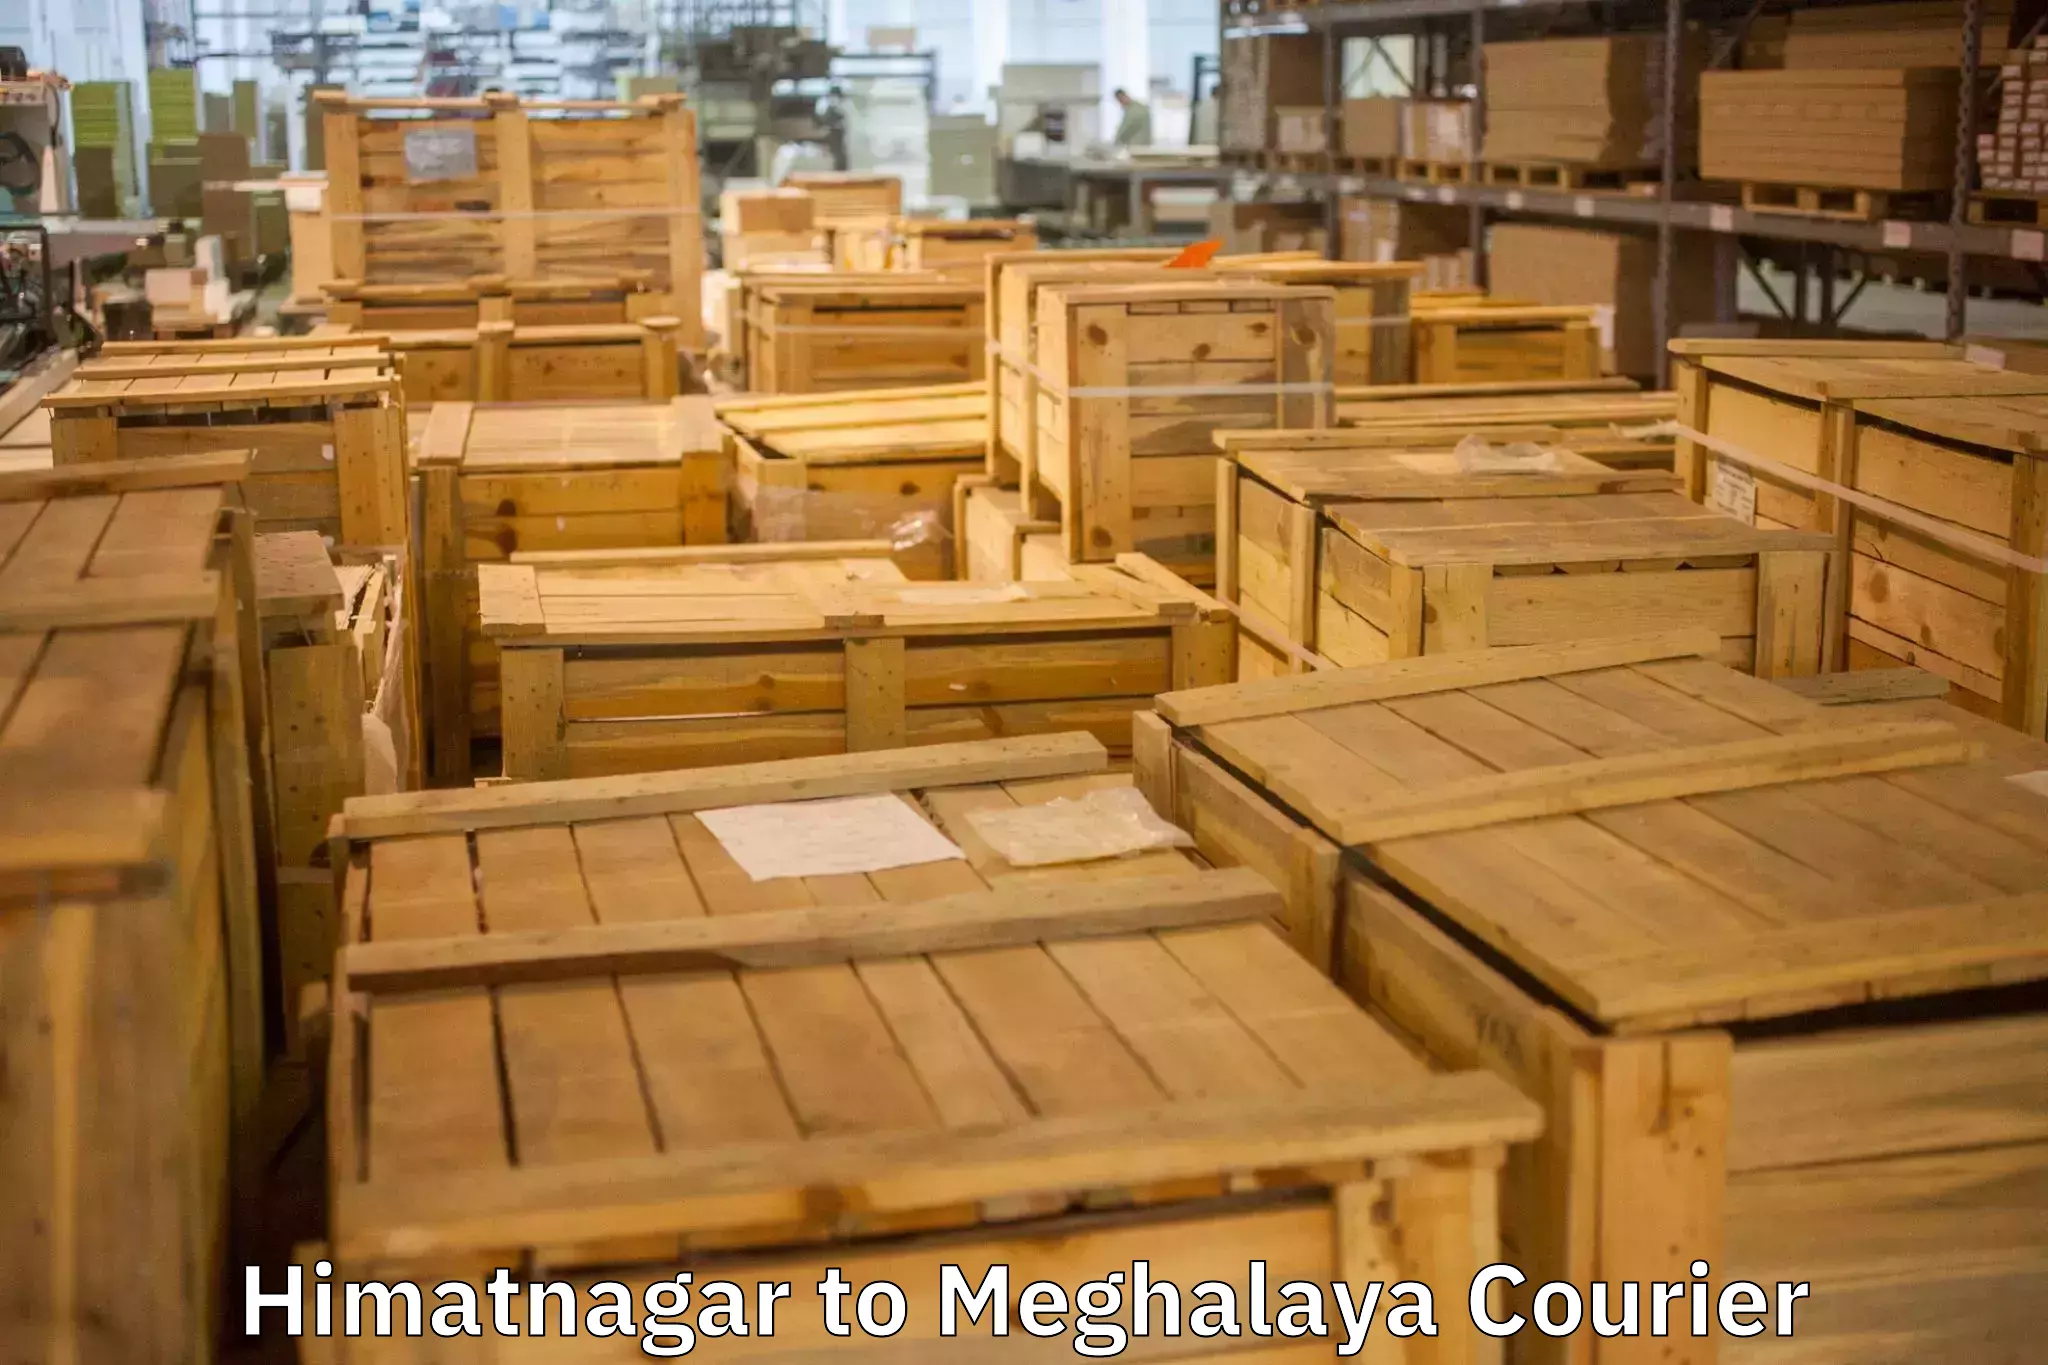 Stress-free household moving Himatnagar to Meghalaya